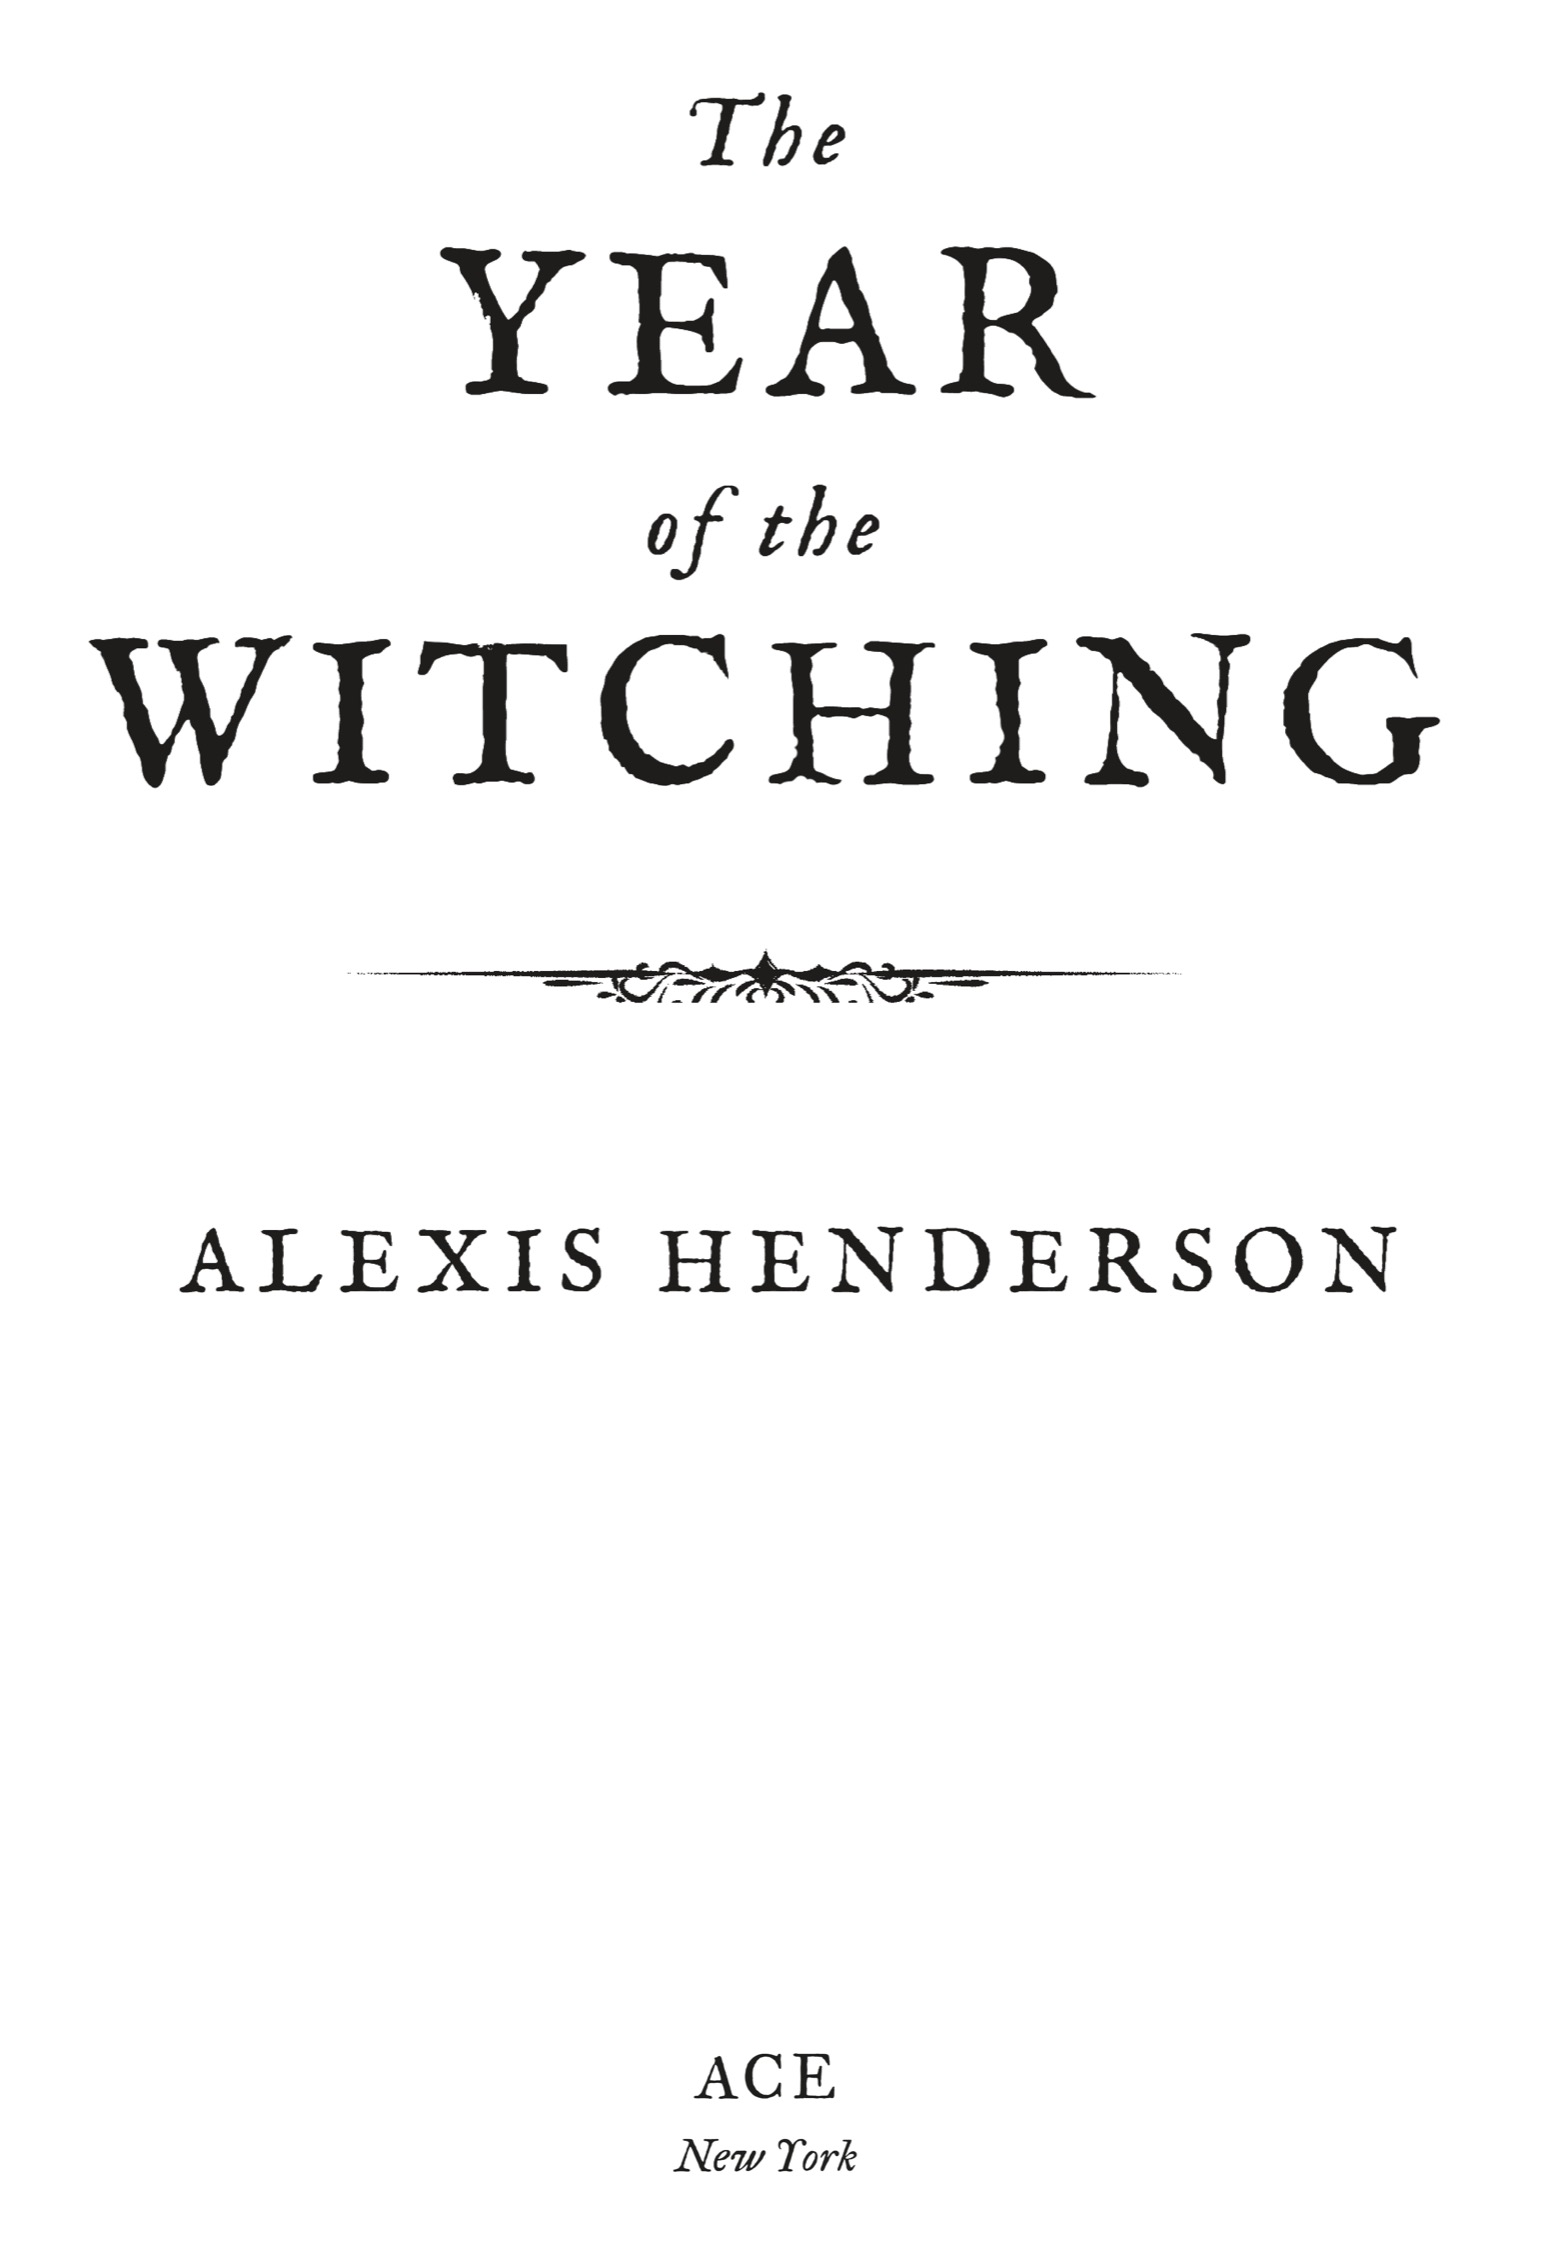 A Season with the Witch by J.W. Ocker